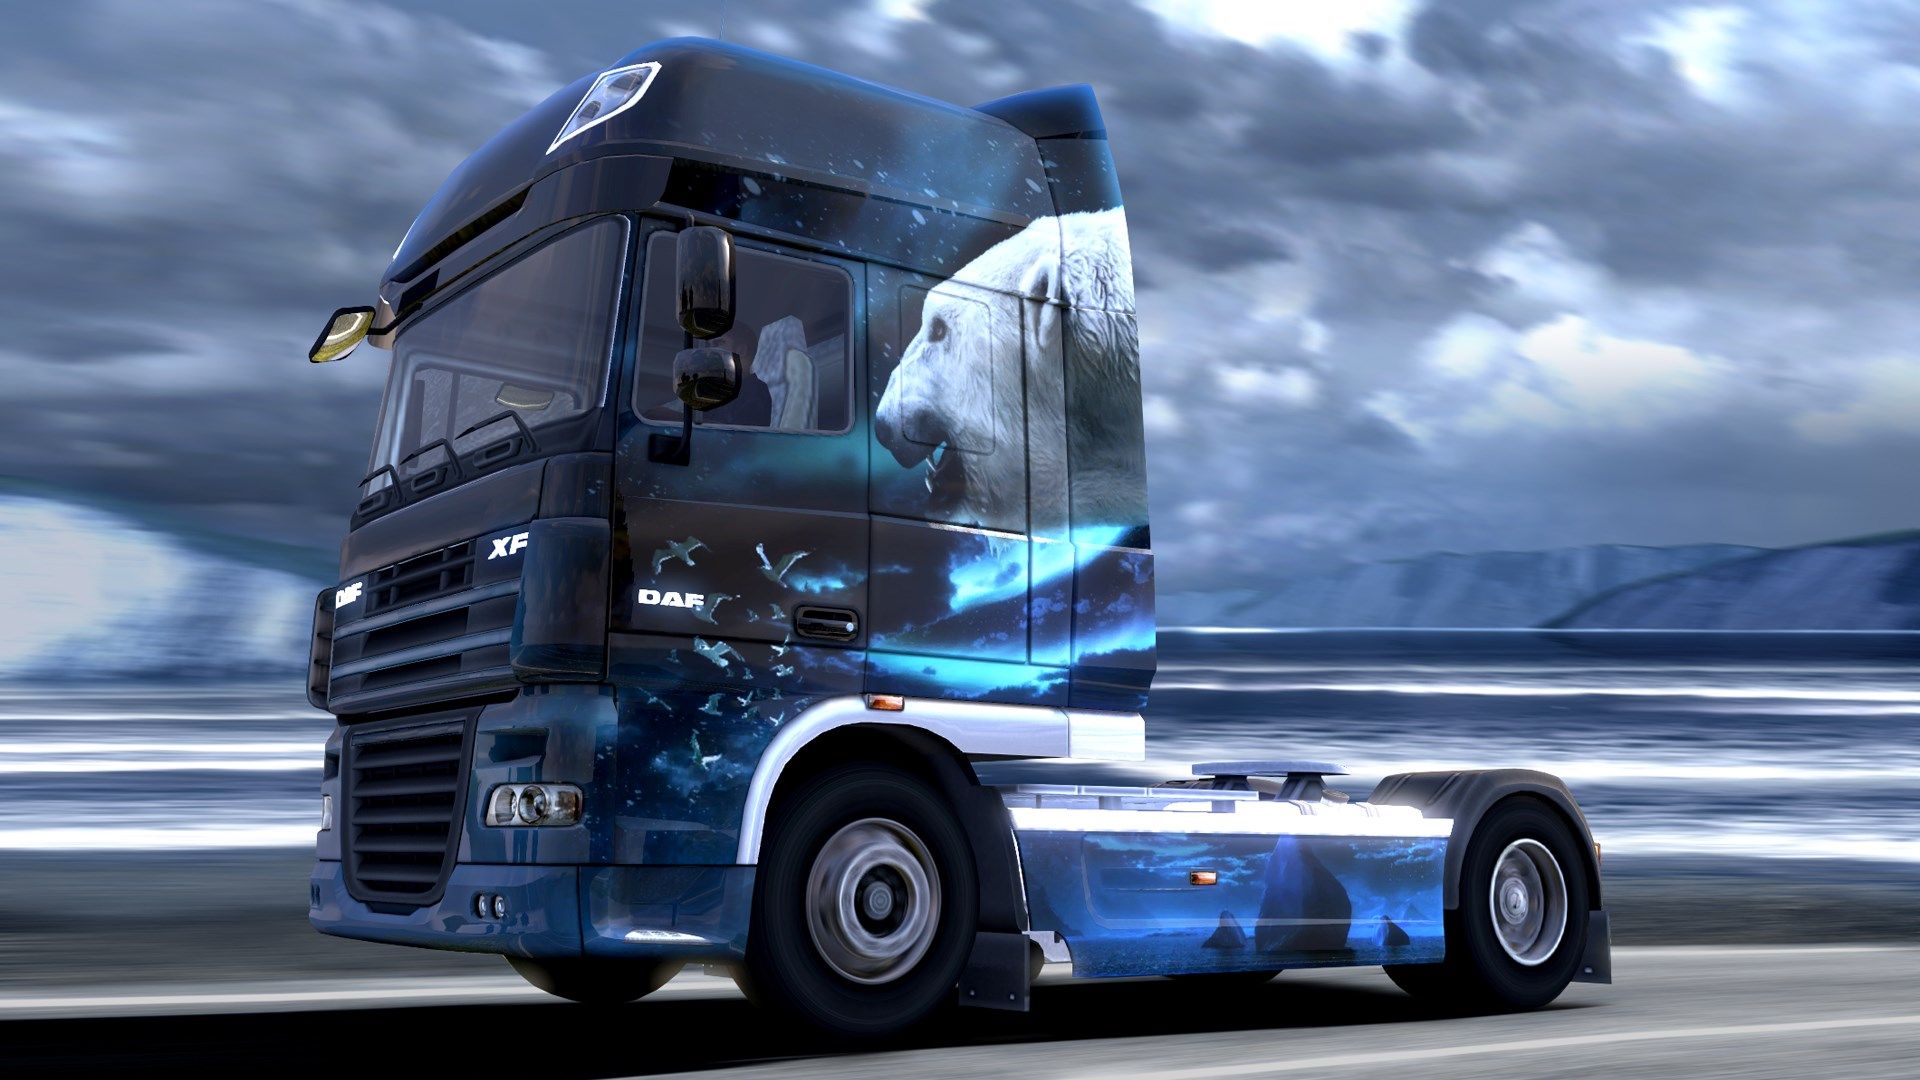 euro truck simulator 2 mod nasil indirilir ve kurulur teknobiyom